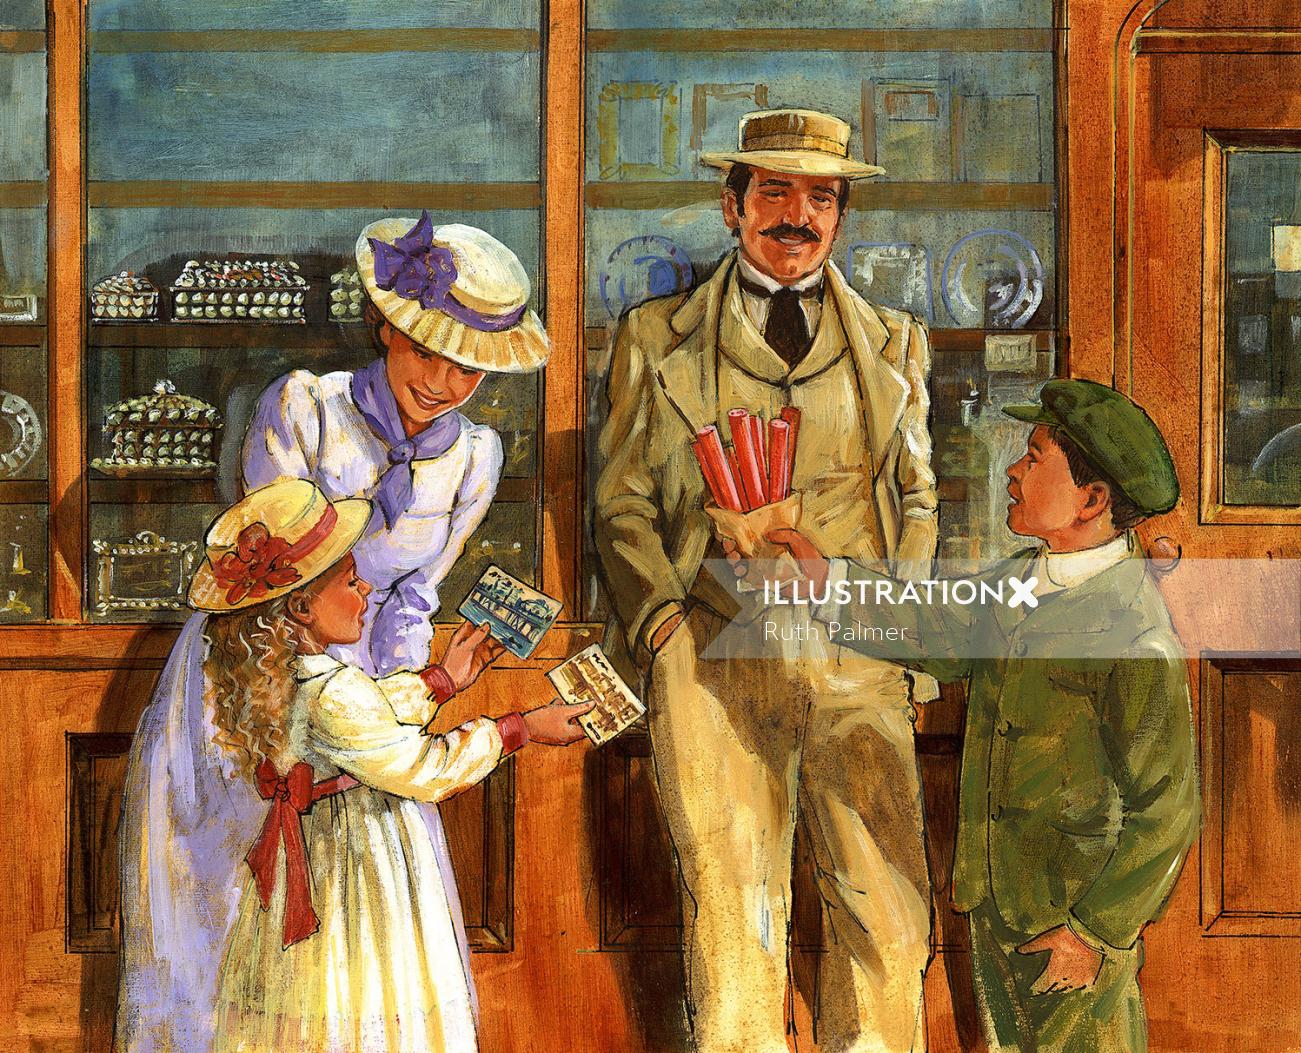 ルースパーマーによるビクトリア朝の土産物店のための絵画